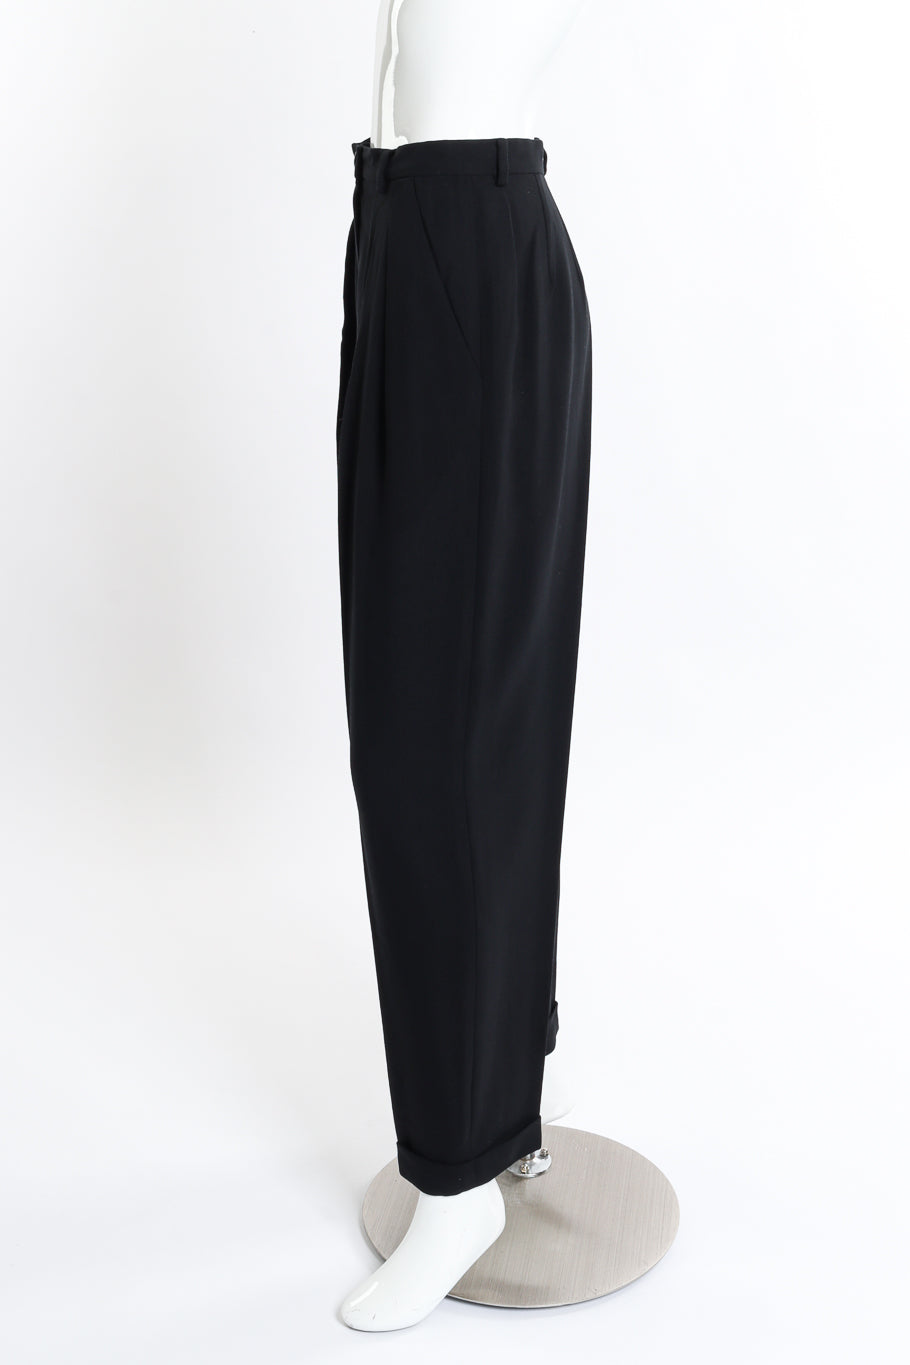 Vintage DKNY Longline Blazer and Pant Suit Set pant side on mannequin @recess la